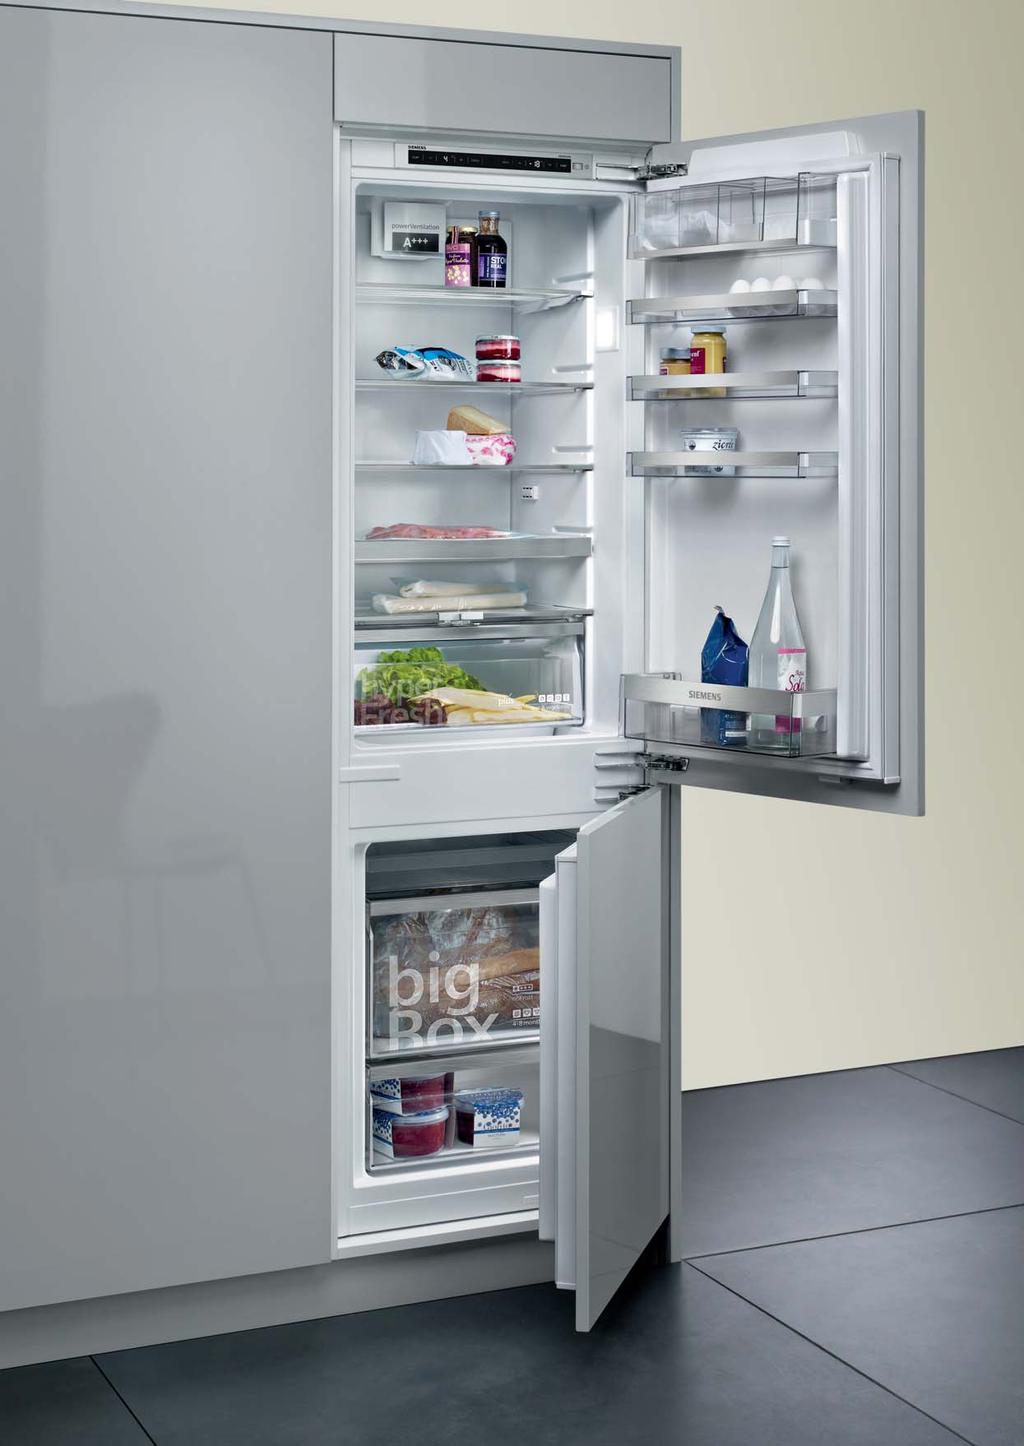 coolefficiency. Een nieuwe generatie integreerbare koelkasten met technologie voor een maximale bescherming van uw levensmiddelen in de beste omstandigheden. Home Connect.